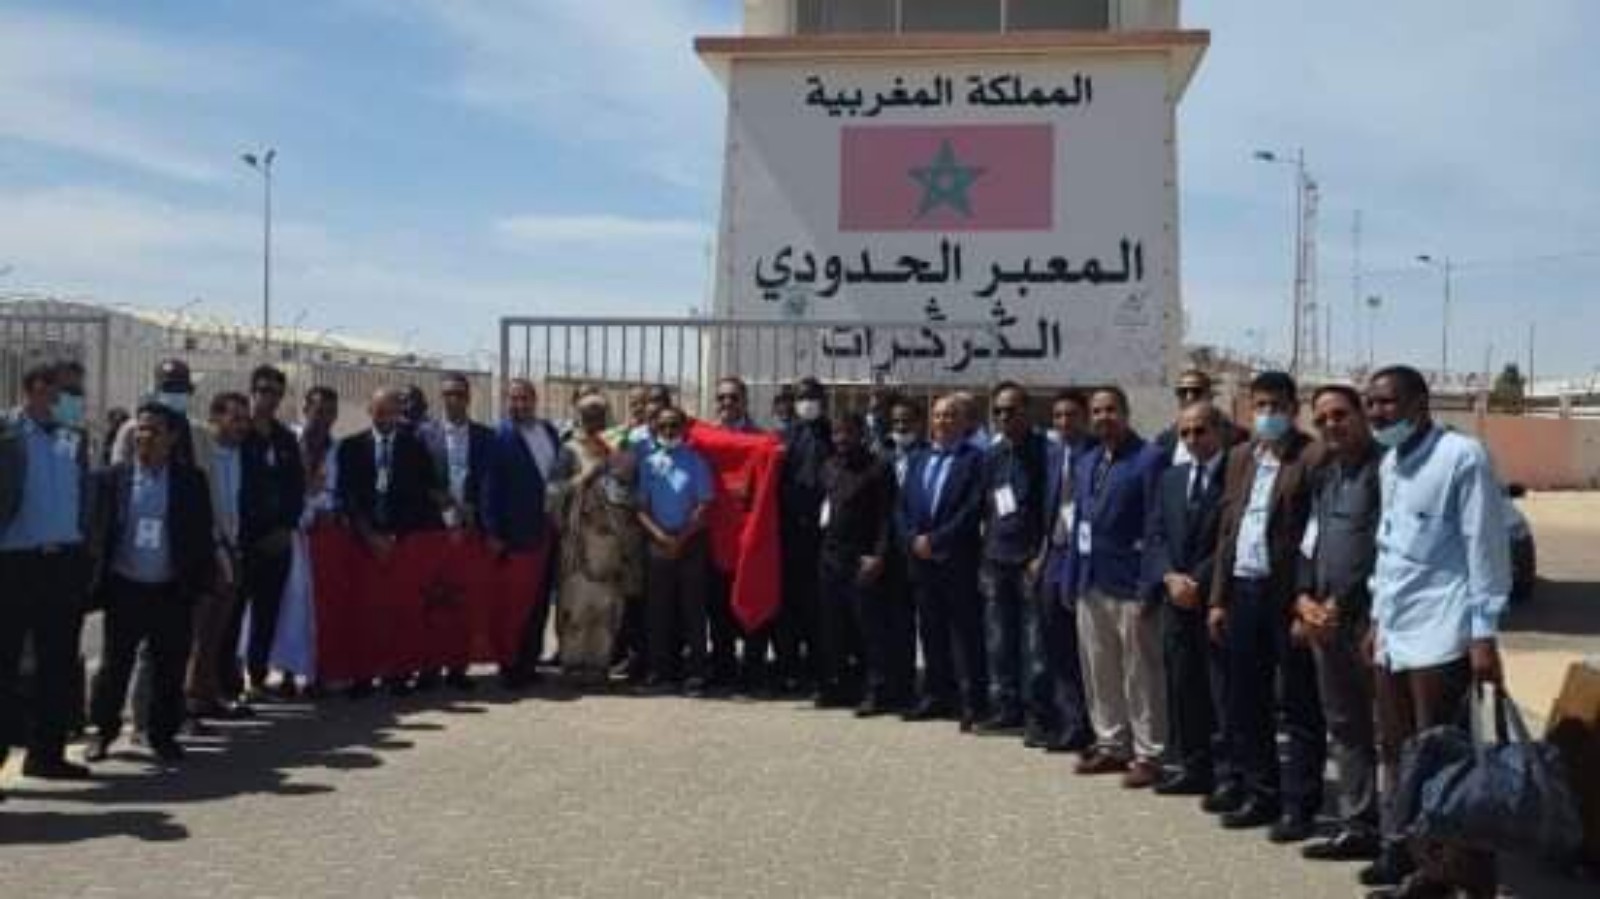 هيئة المحامين الموريتانيين تدافع عن زيارة الصحراء المغربية: نتعاون مع هيئات المنطقة بعيدا عن التجاذبات